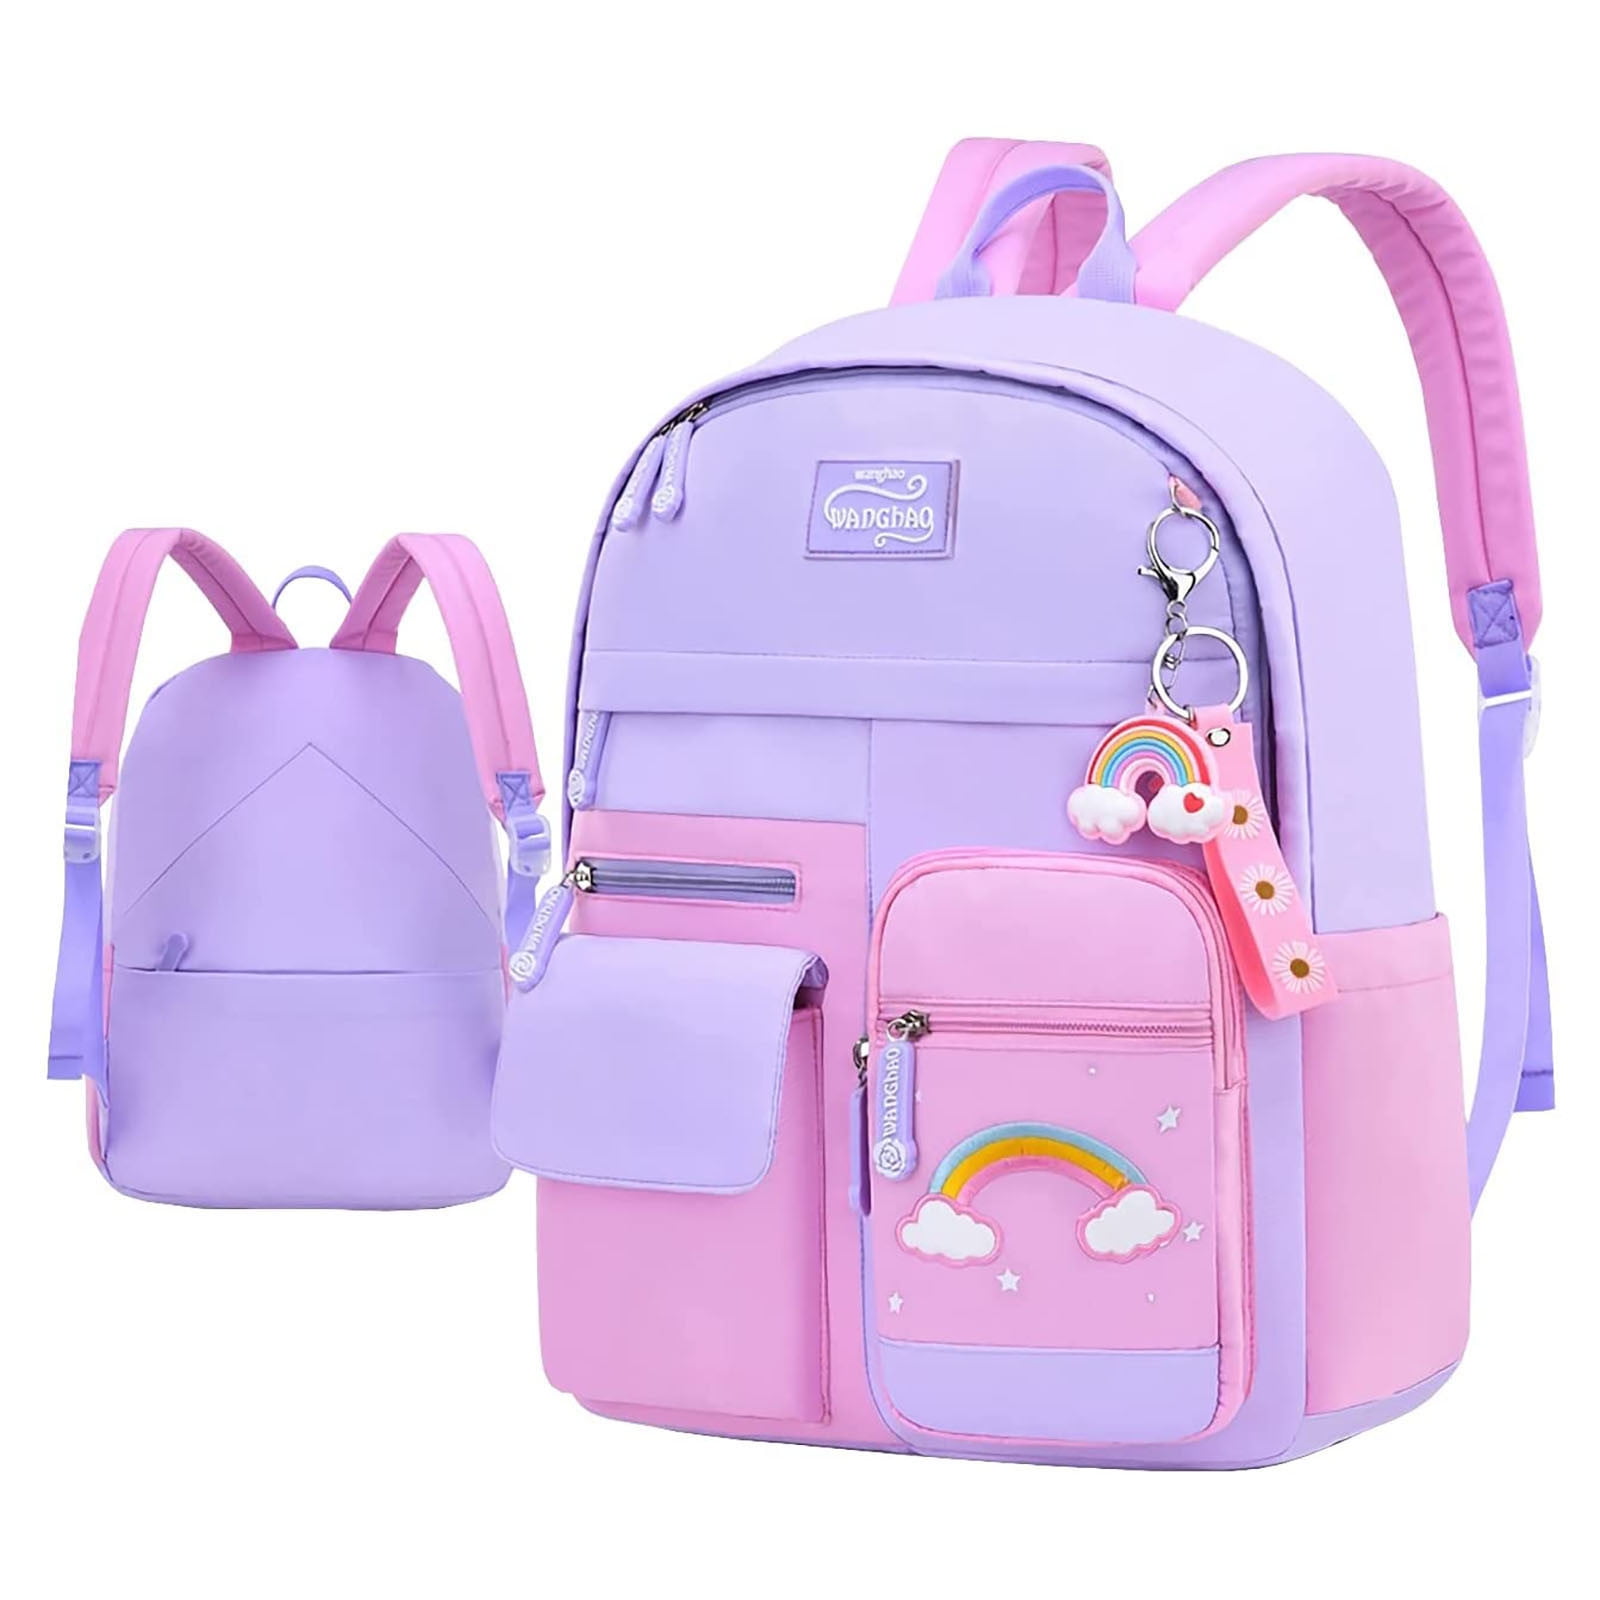 ZHIYU Backpack For Girls Schoolbag Bookbag Women Casual Daypack For ...